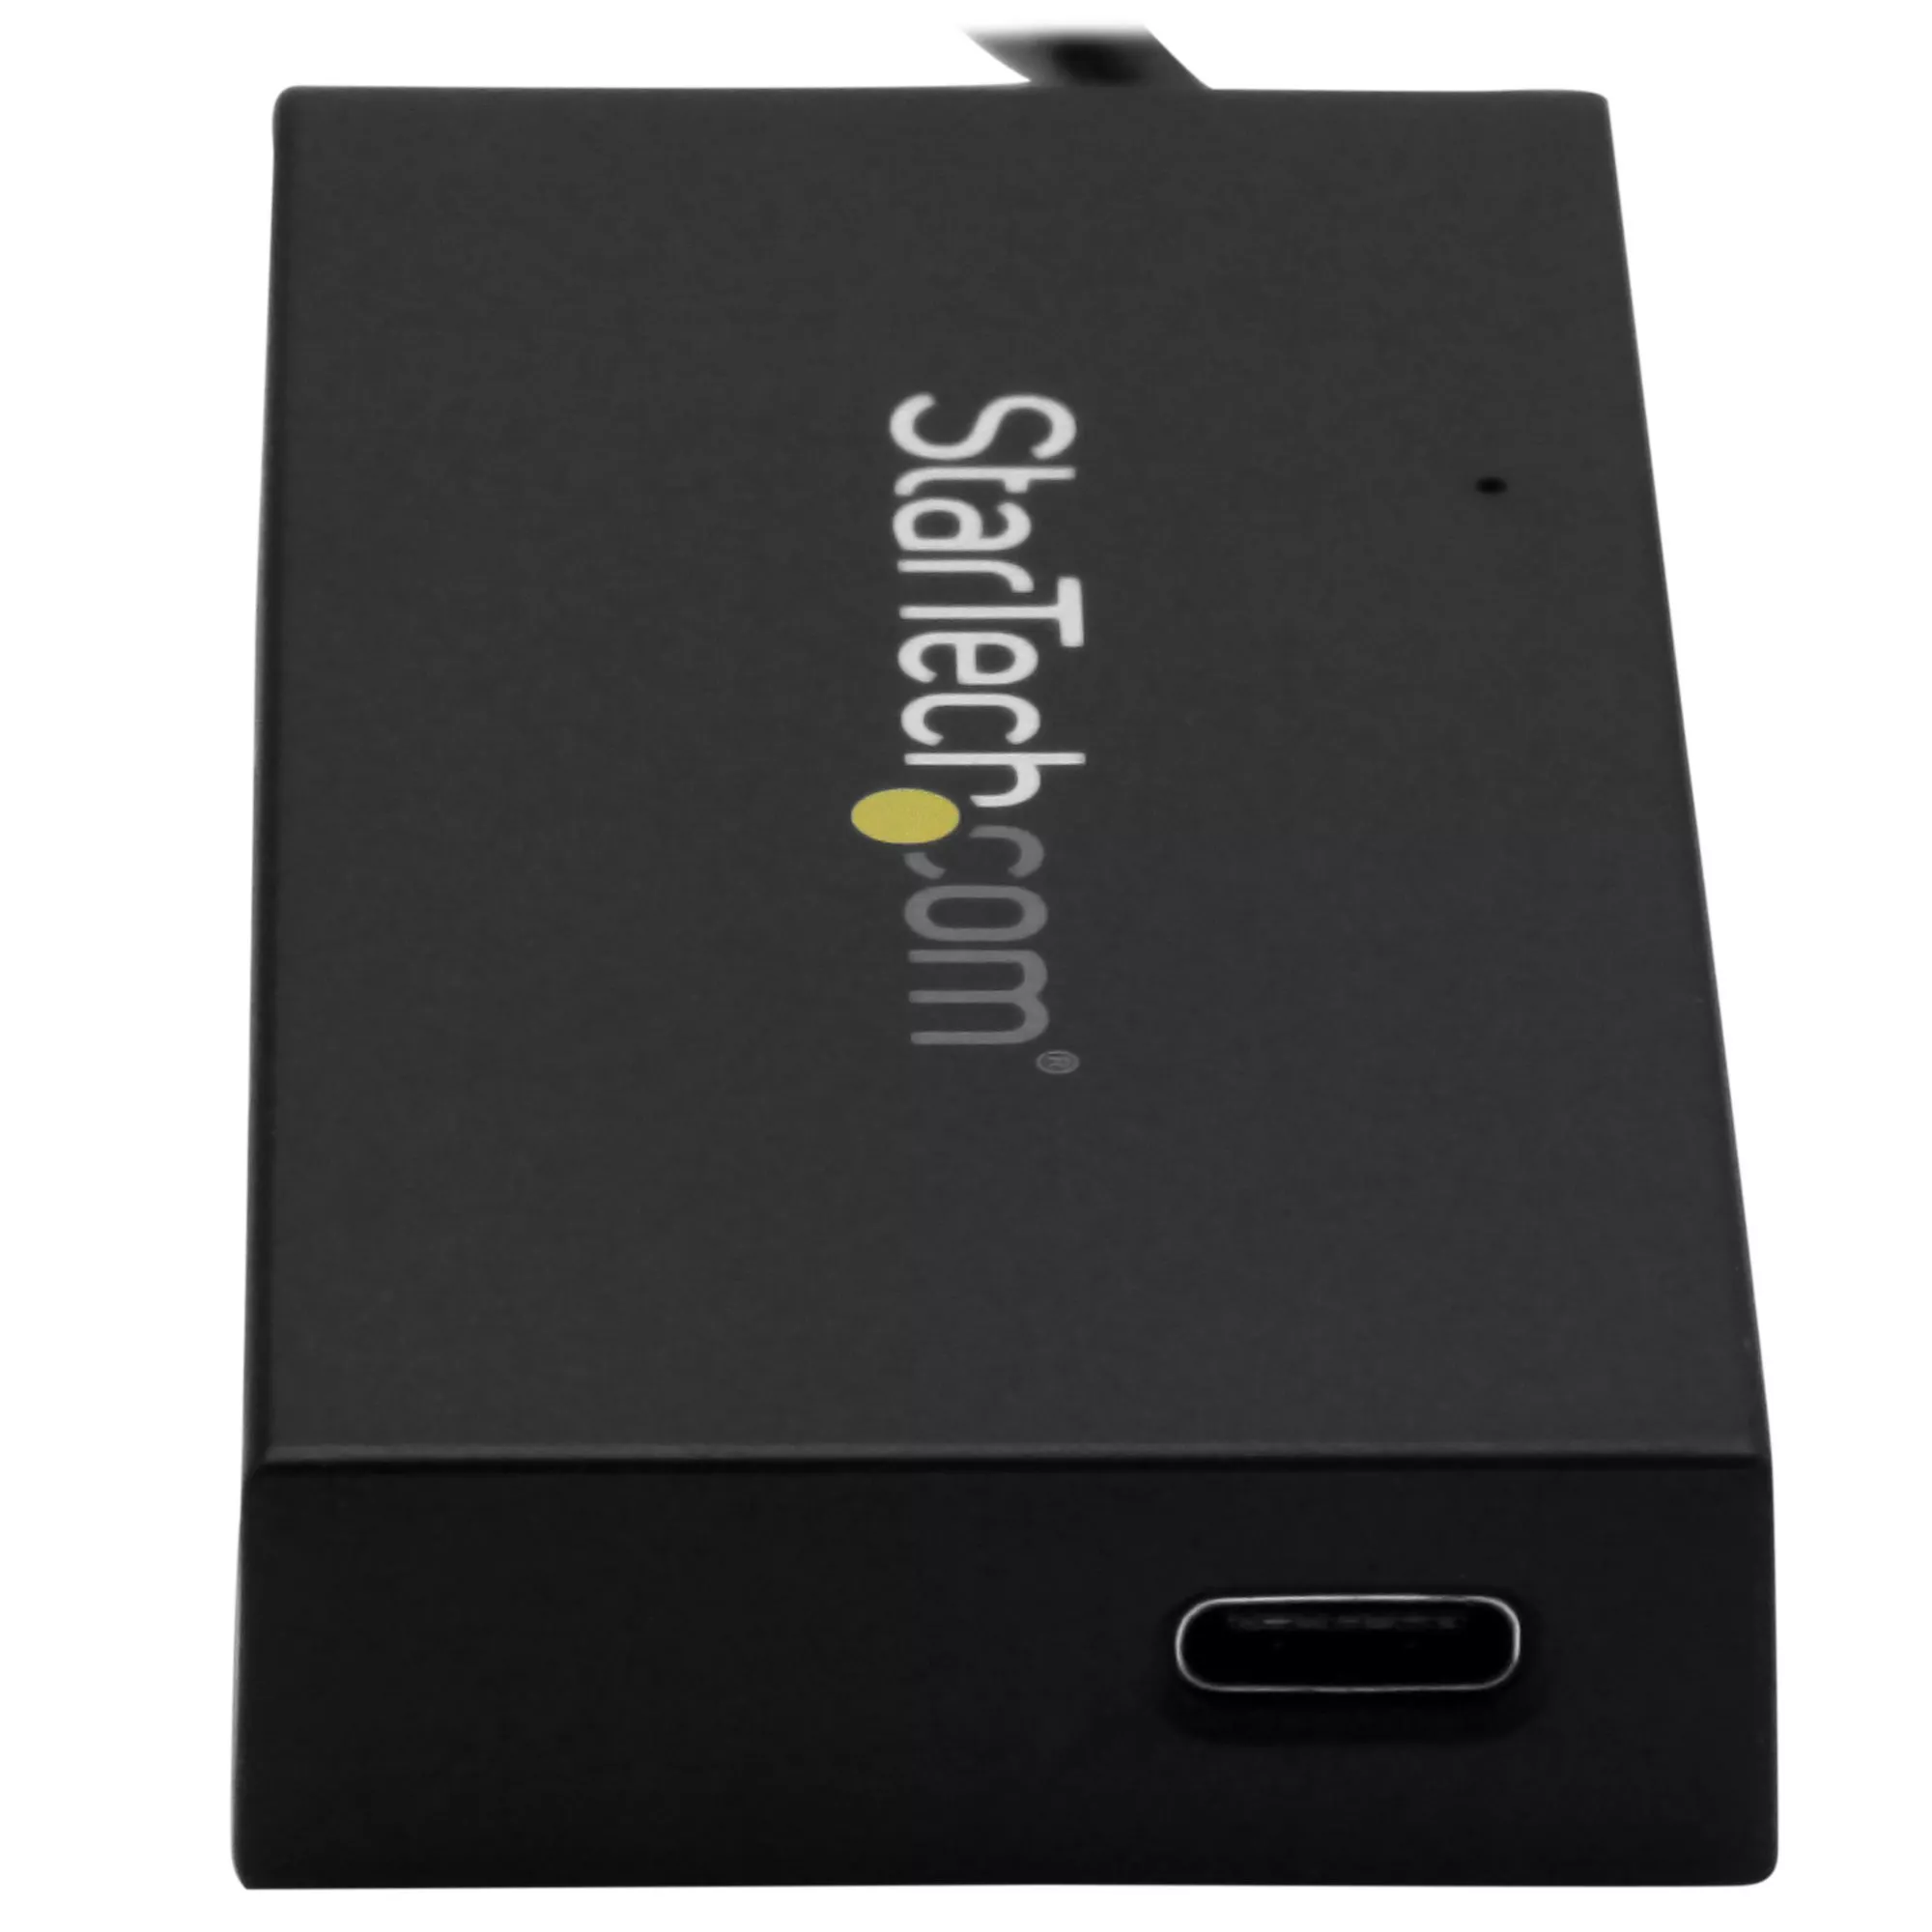 Vente StarTech.com Hub USB 3.0 4 Ports - Hub StarTech.com au meilleur prix - visuel 4